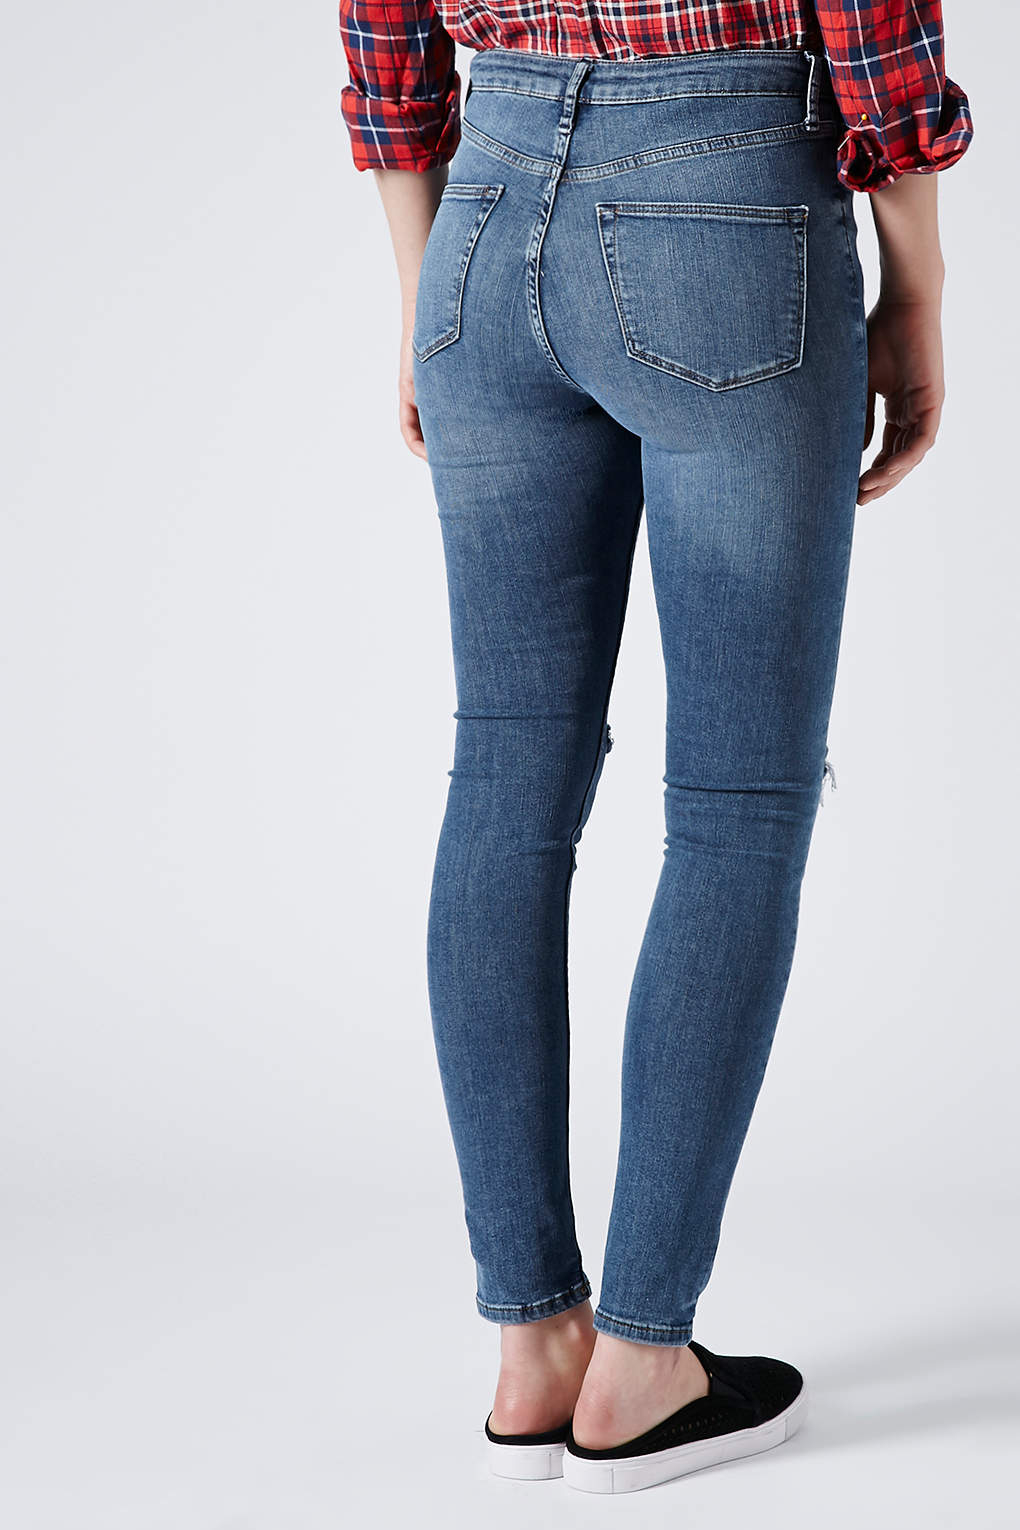 topshop jeans jamie